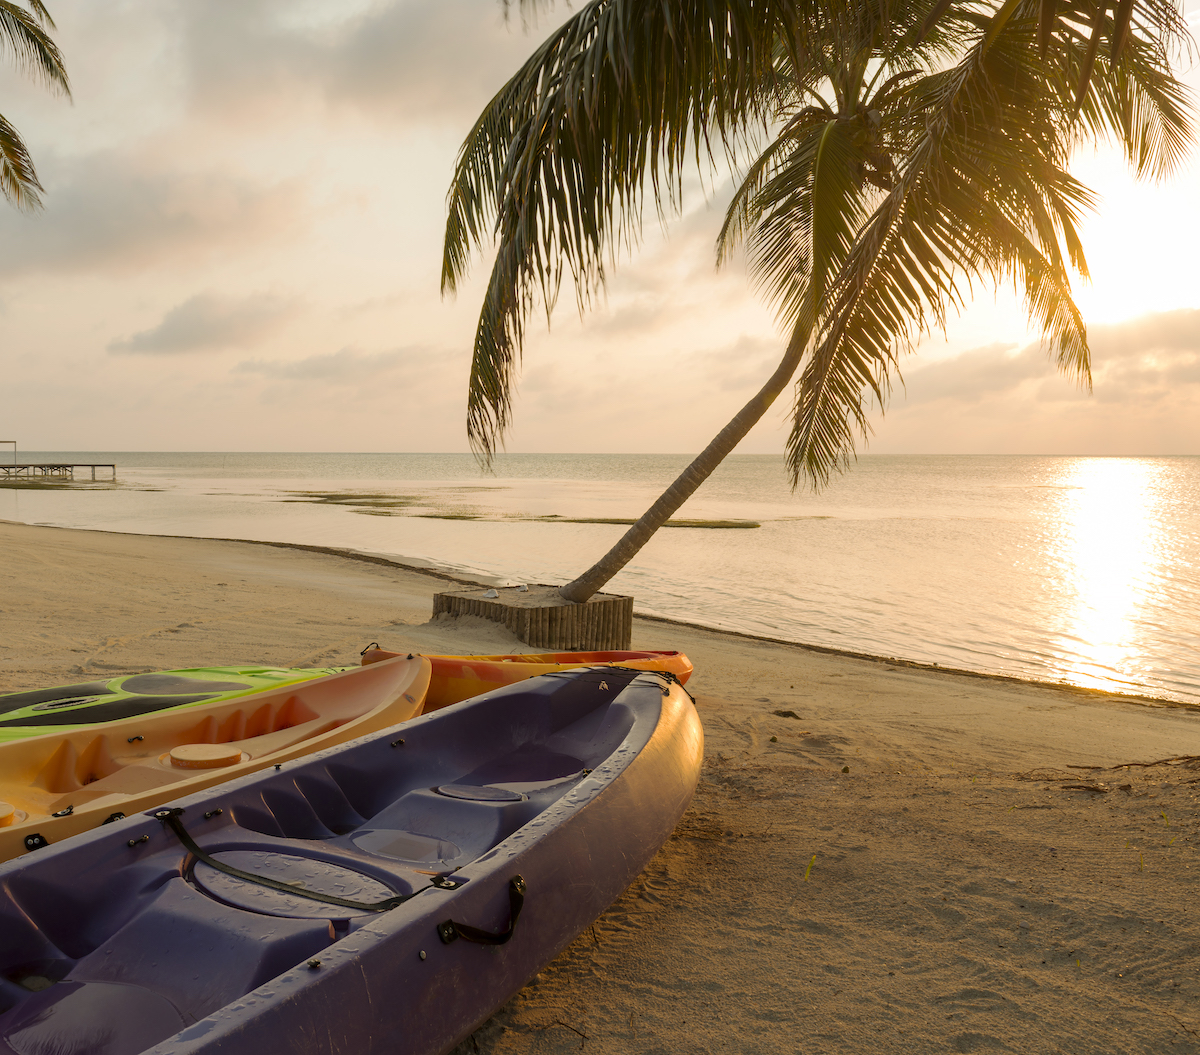 A kayak on a beach at sunrise. 